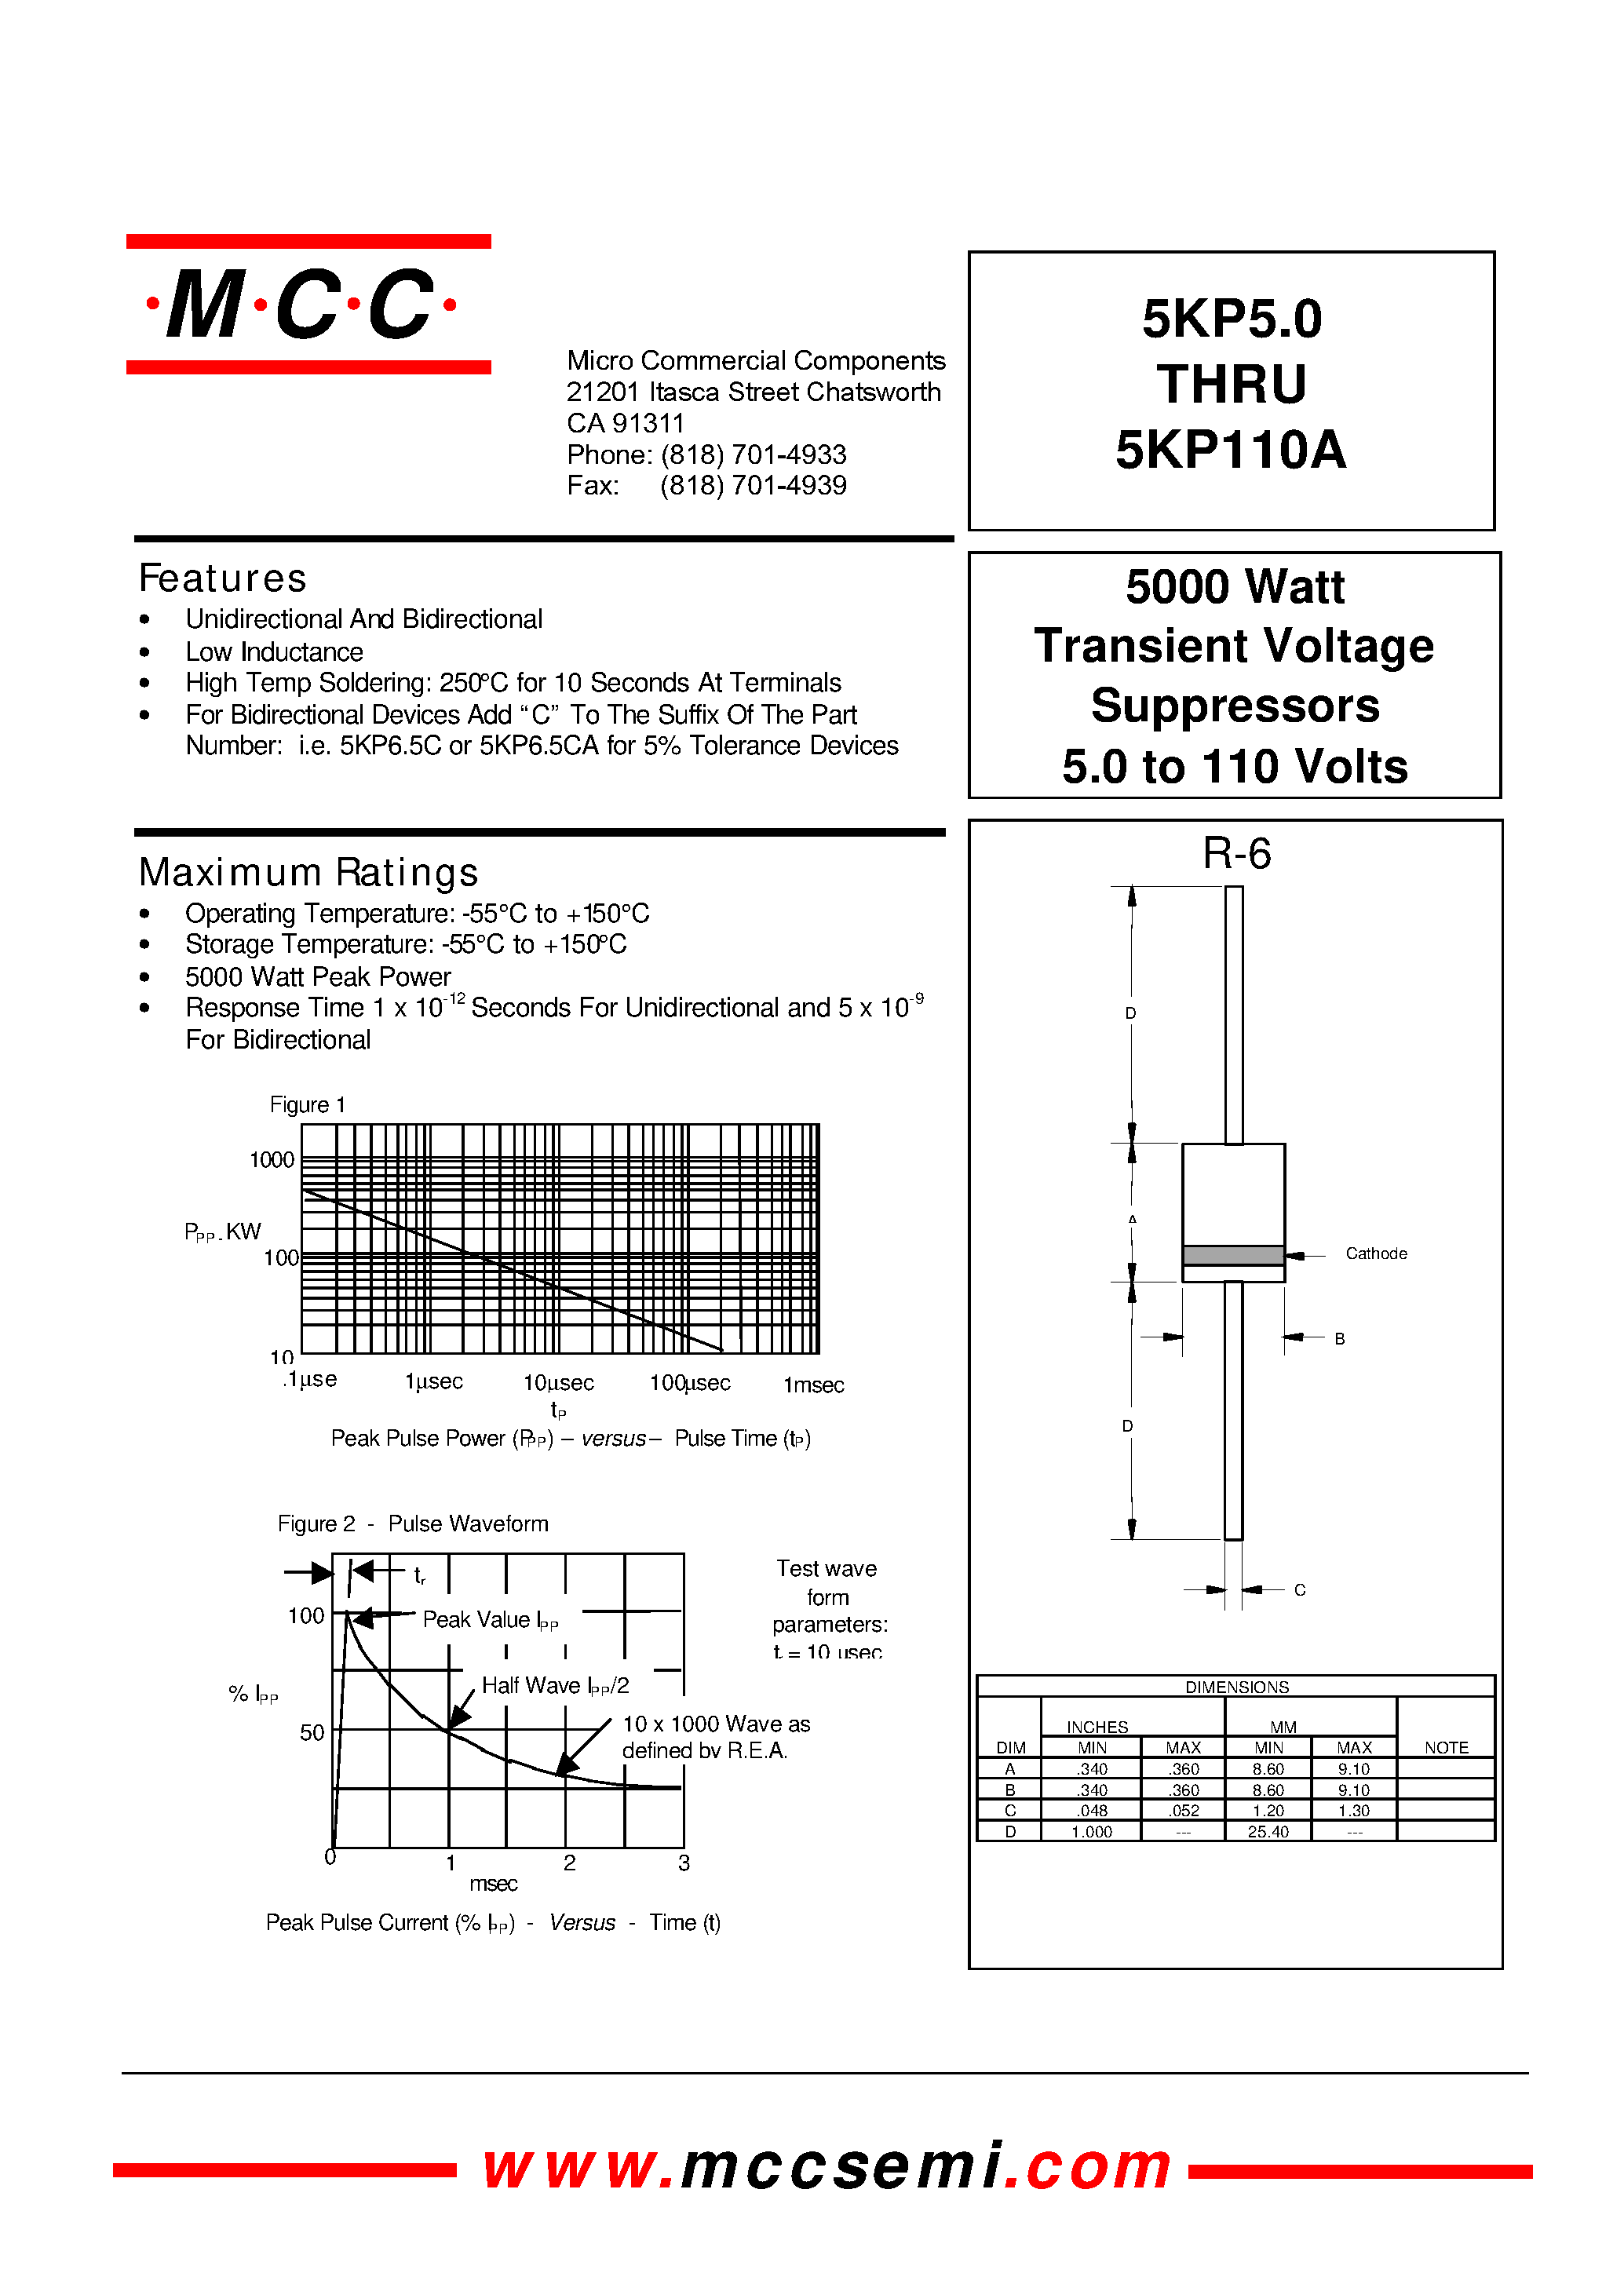 Datasheet 5KP8.5 - 5000 Watt Transient Voltage Suppressors 5.0 to 110 Volts page 1